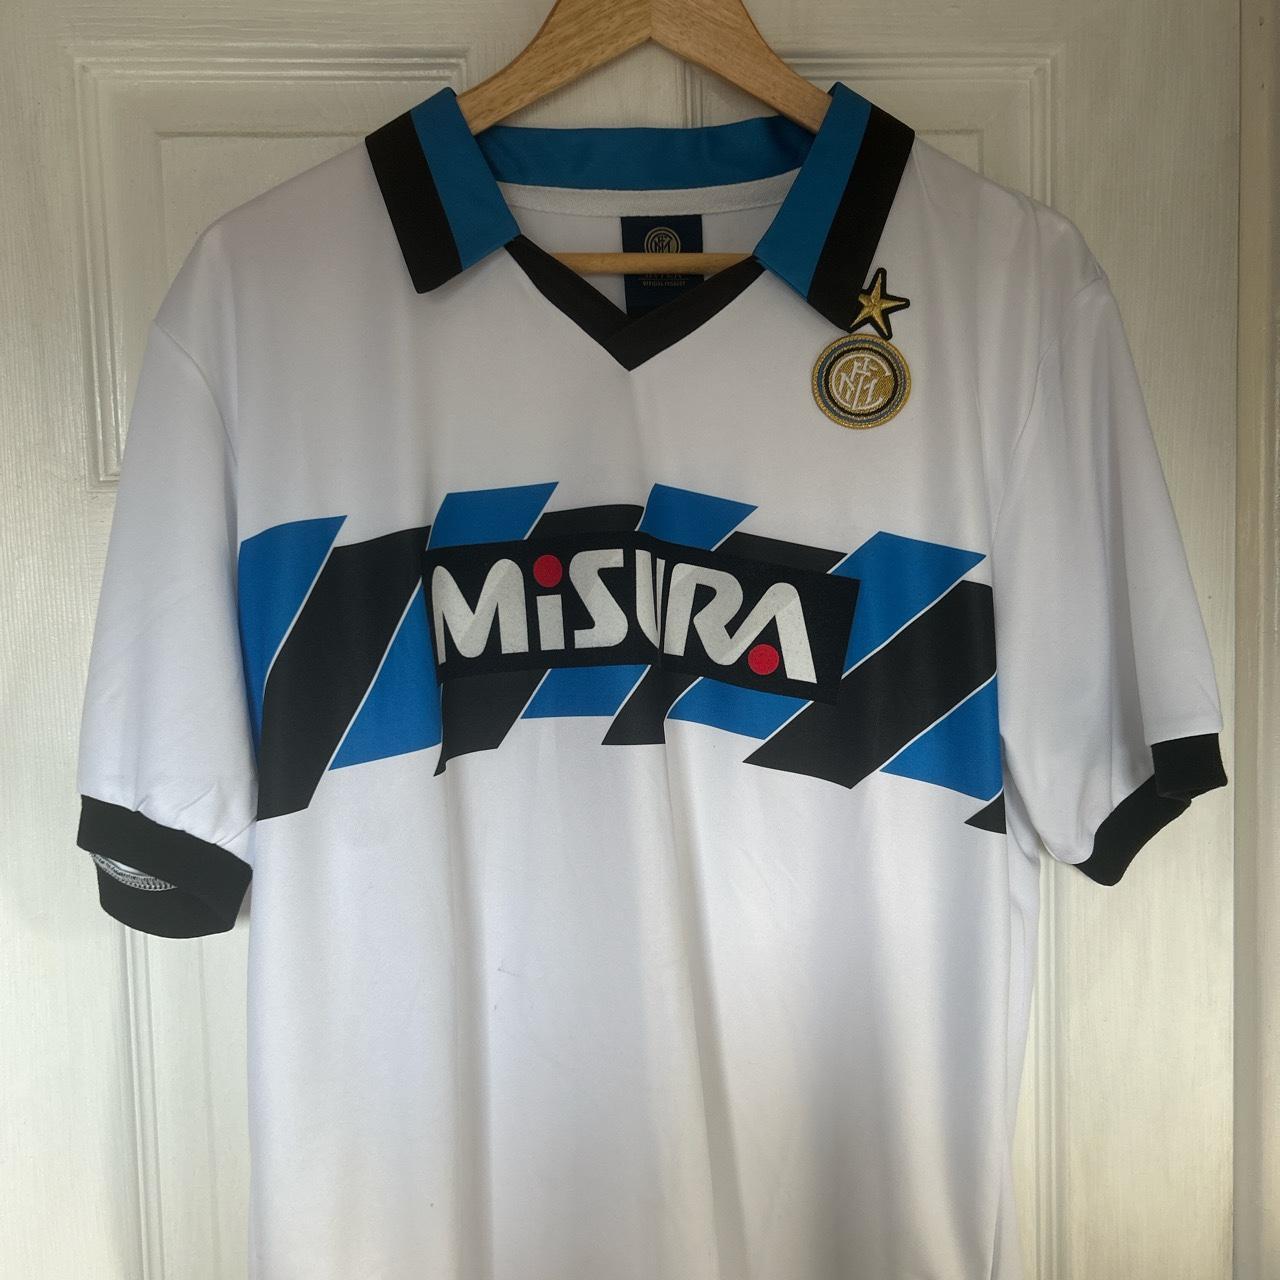 Inter Milan 1990 away kit - Depop